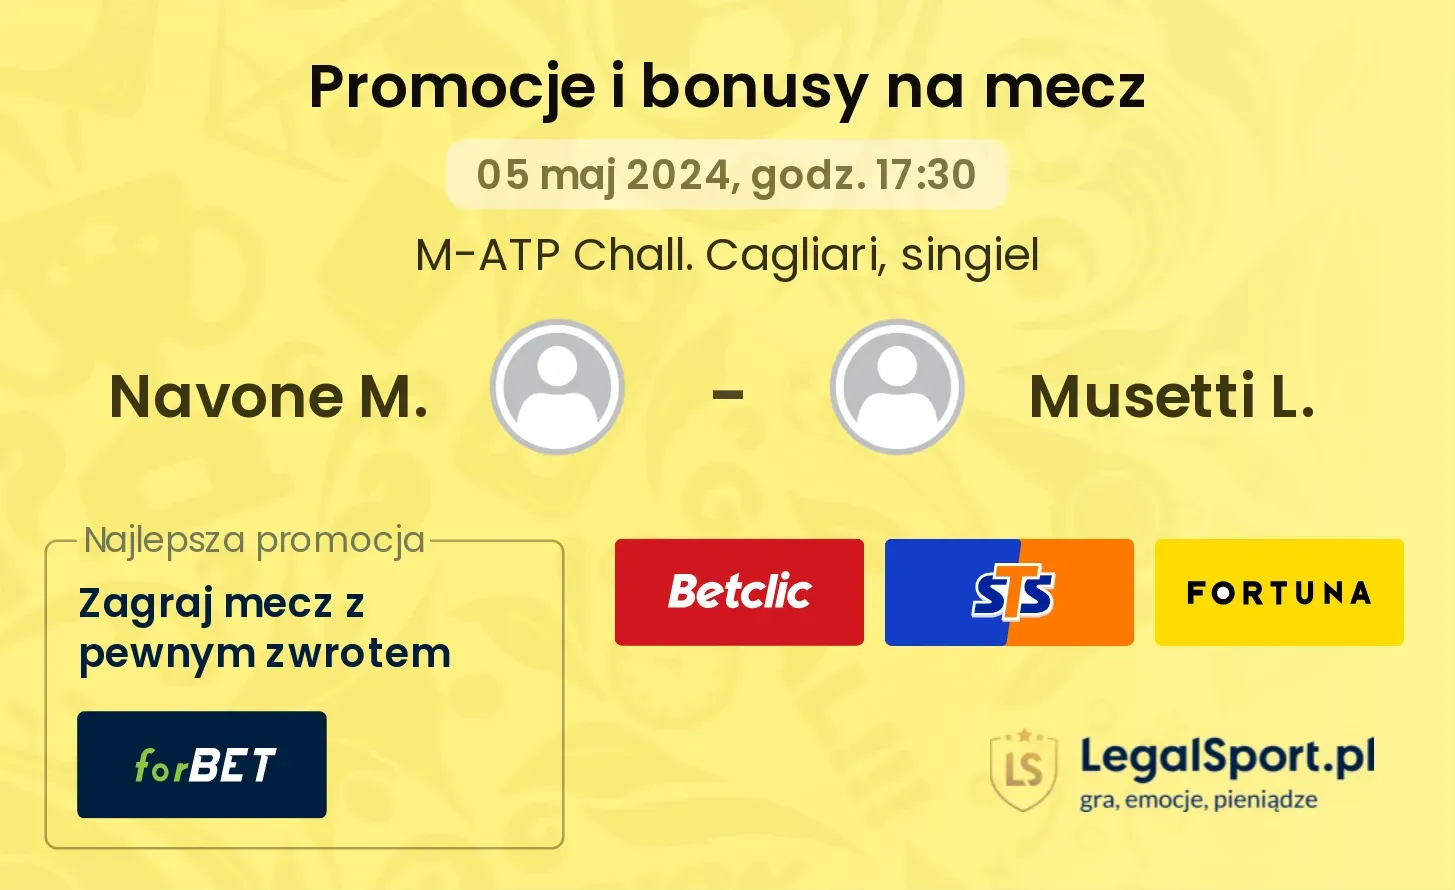 Navone M. - Musetti L. promocje bonusy na mecz